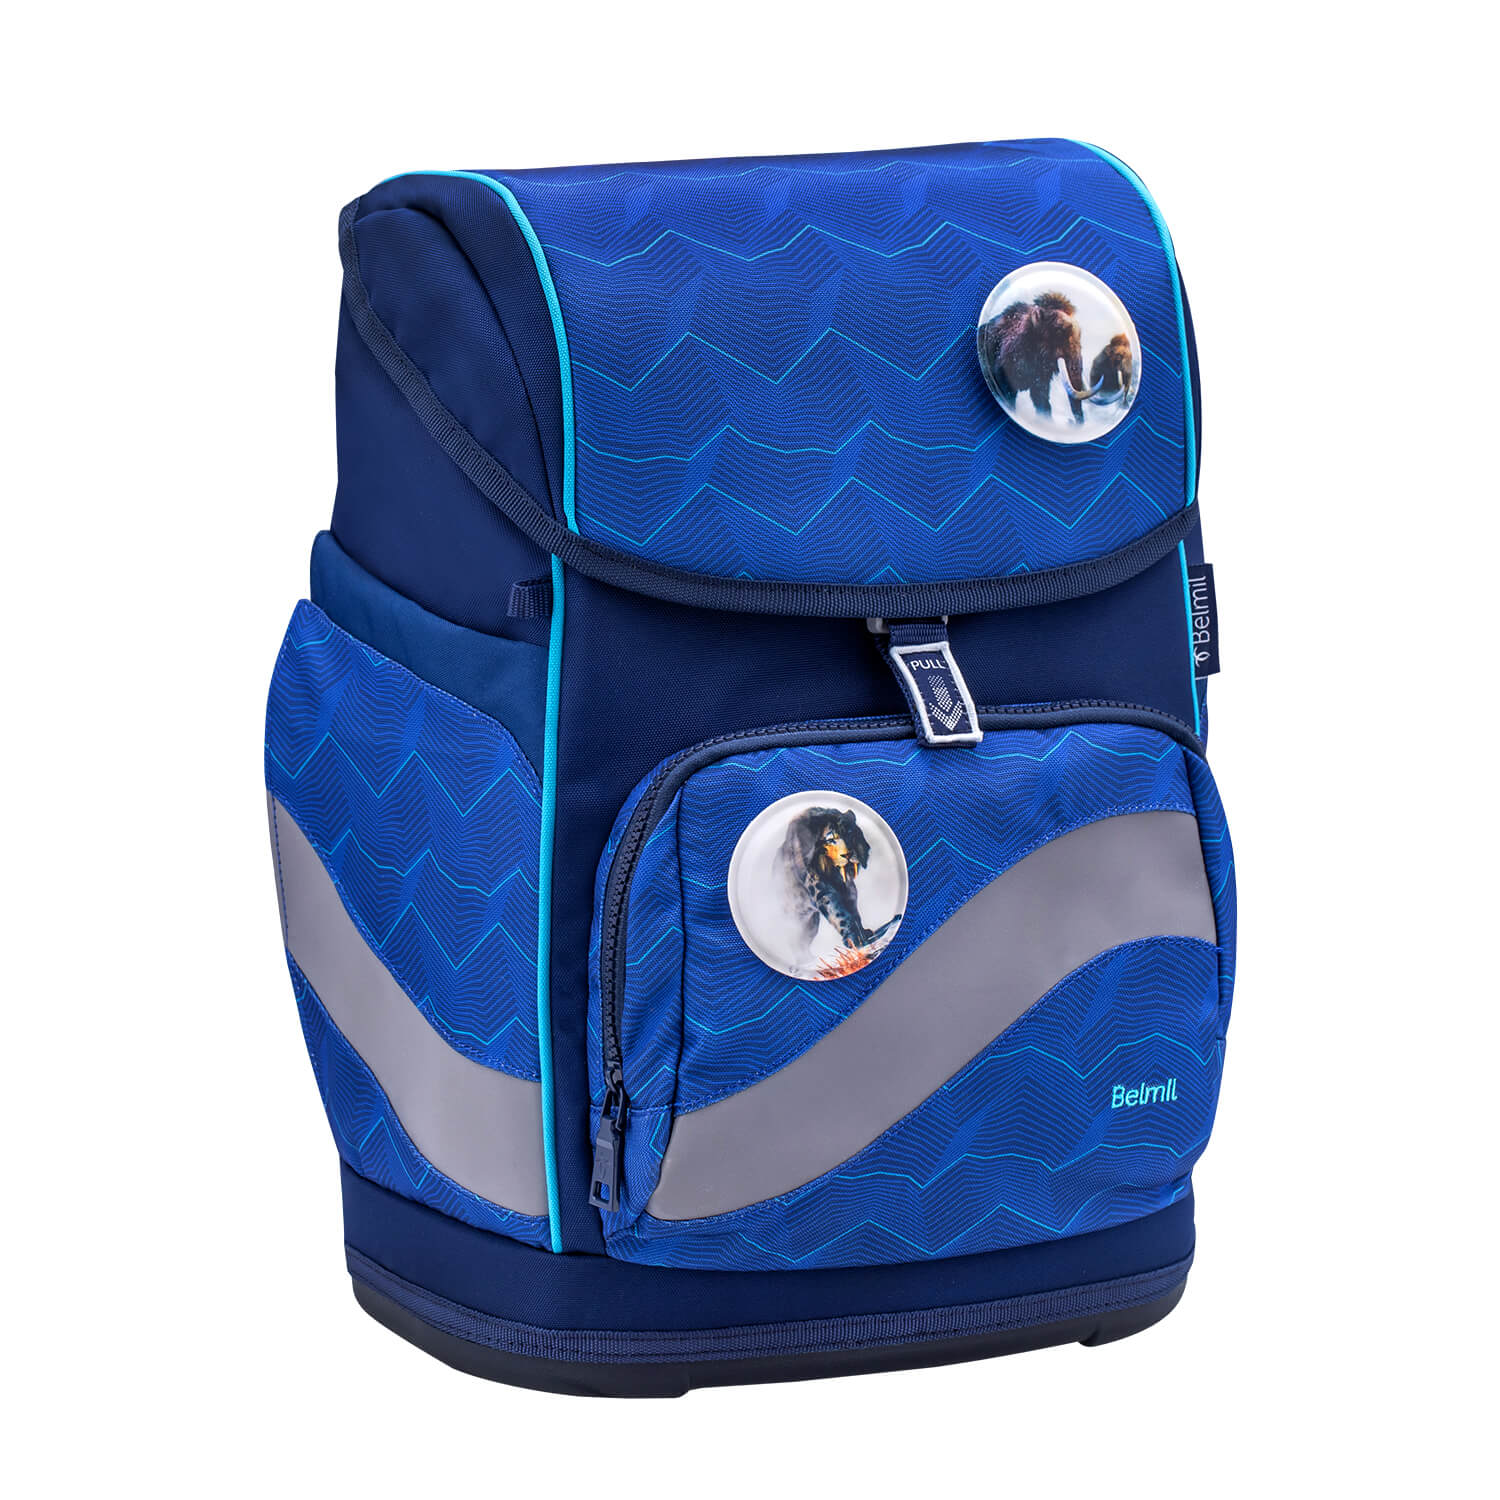 Smarty Plus Estate Blue Schoolbag set 5pcs.